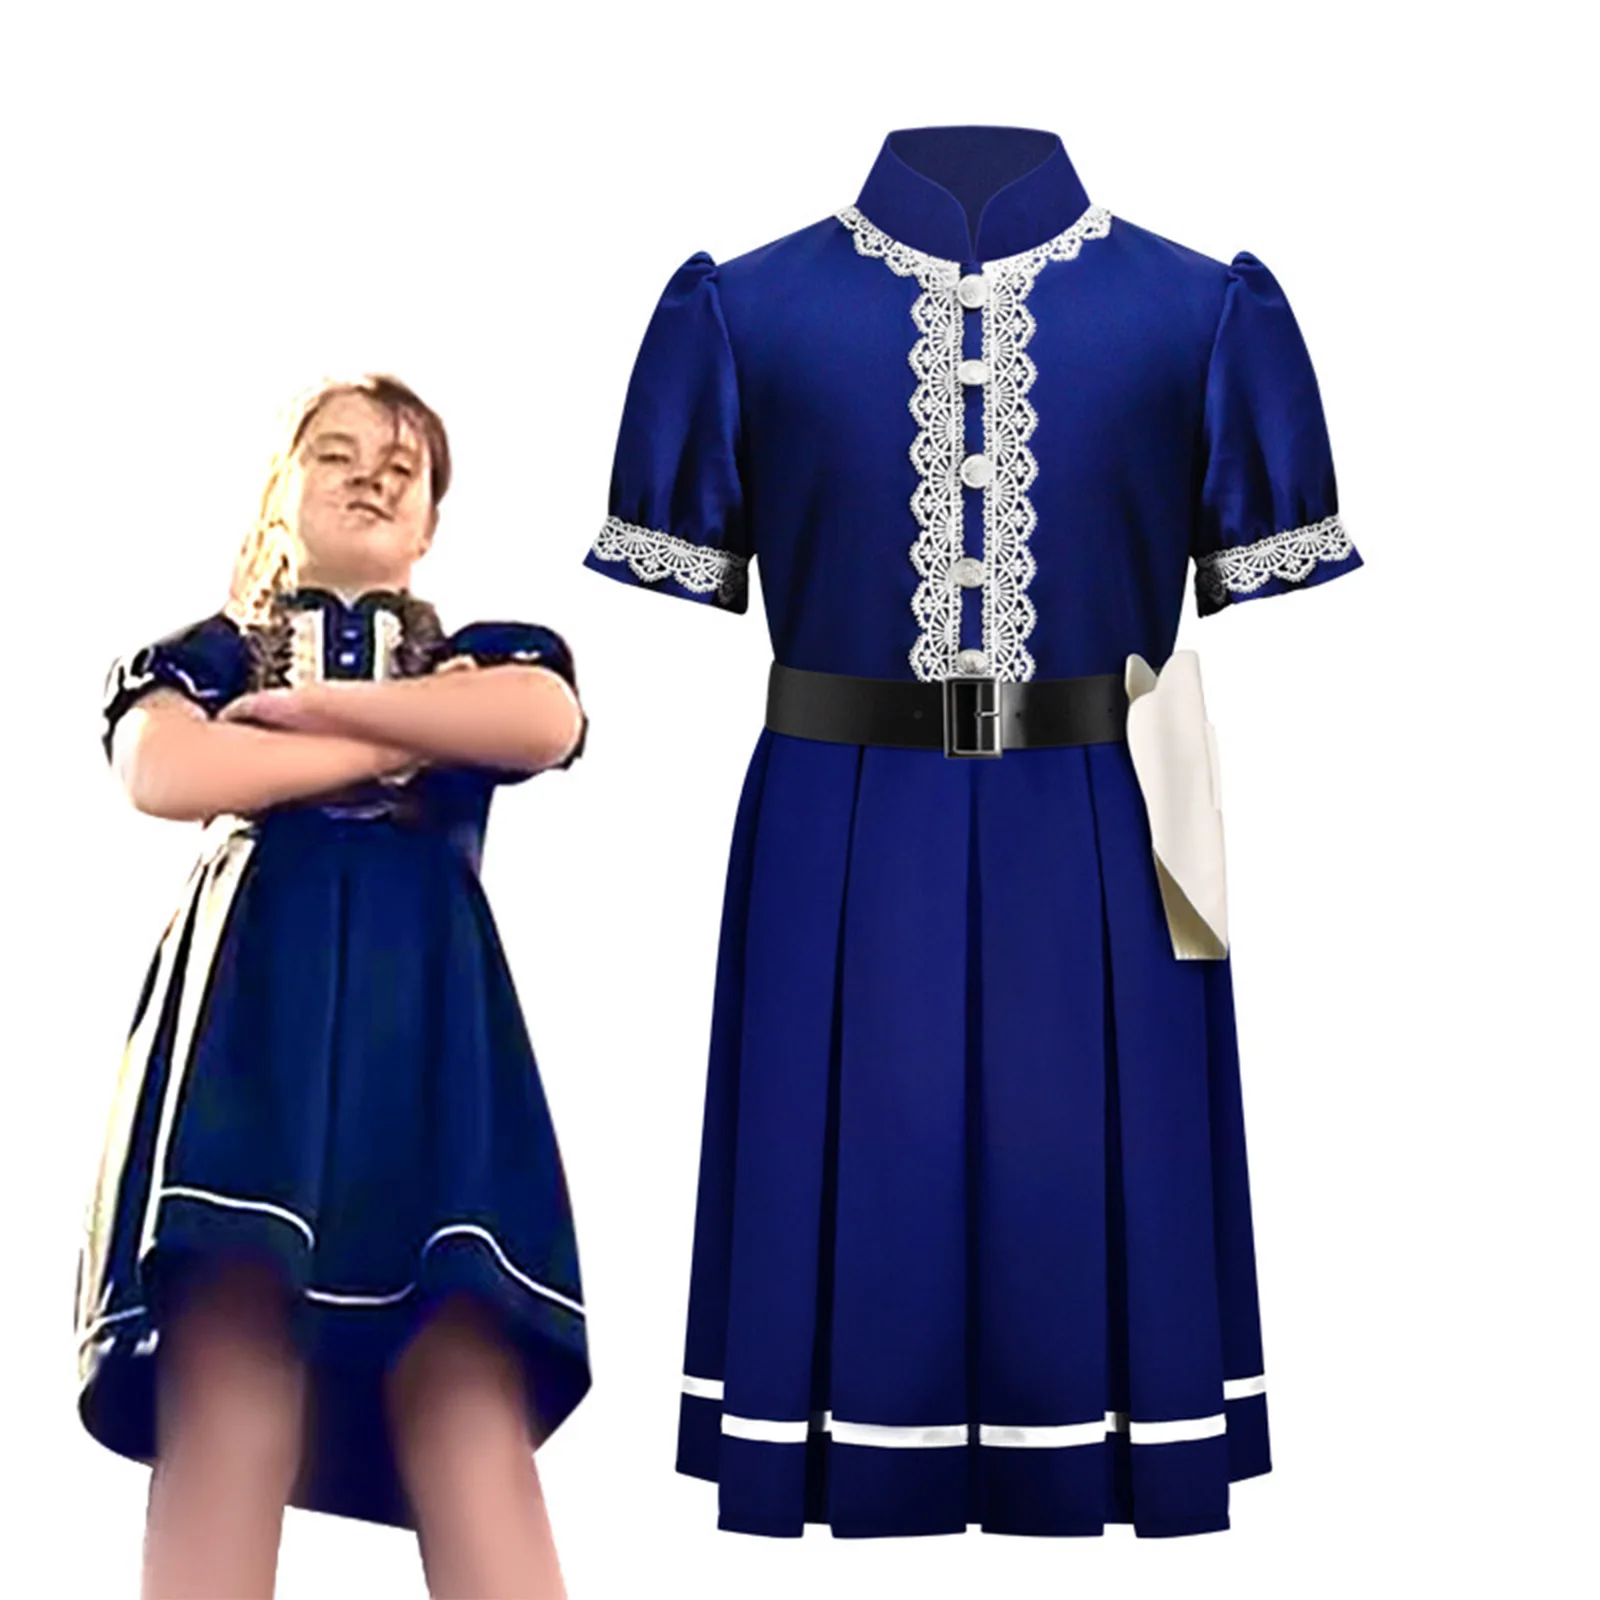 

Детское летнее платье из фильма «Кукуруза Айден», королевский синий костюм для косплея, одежда для детей и родителей на Хэллоуин с черным ремнем и кольцом